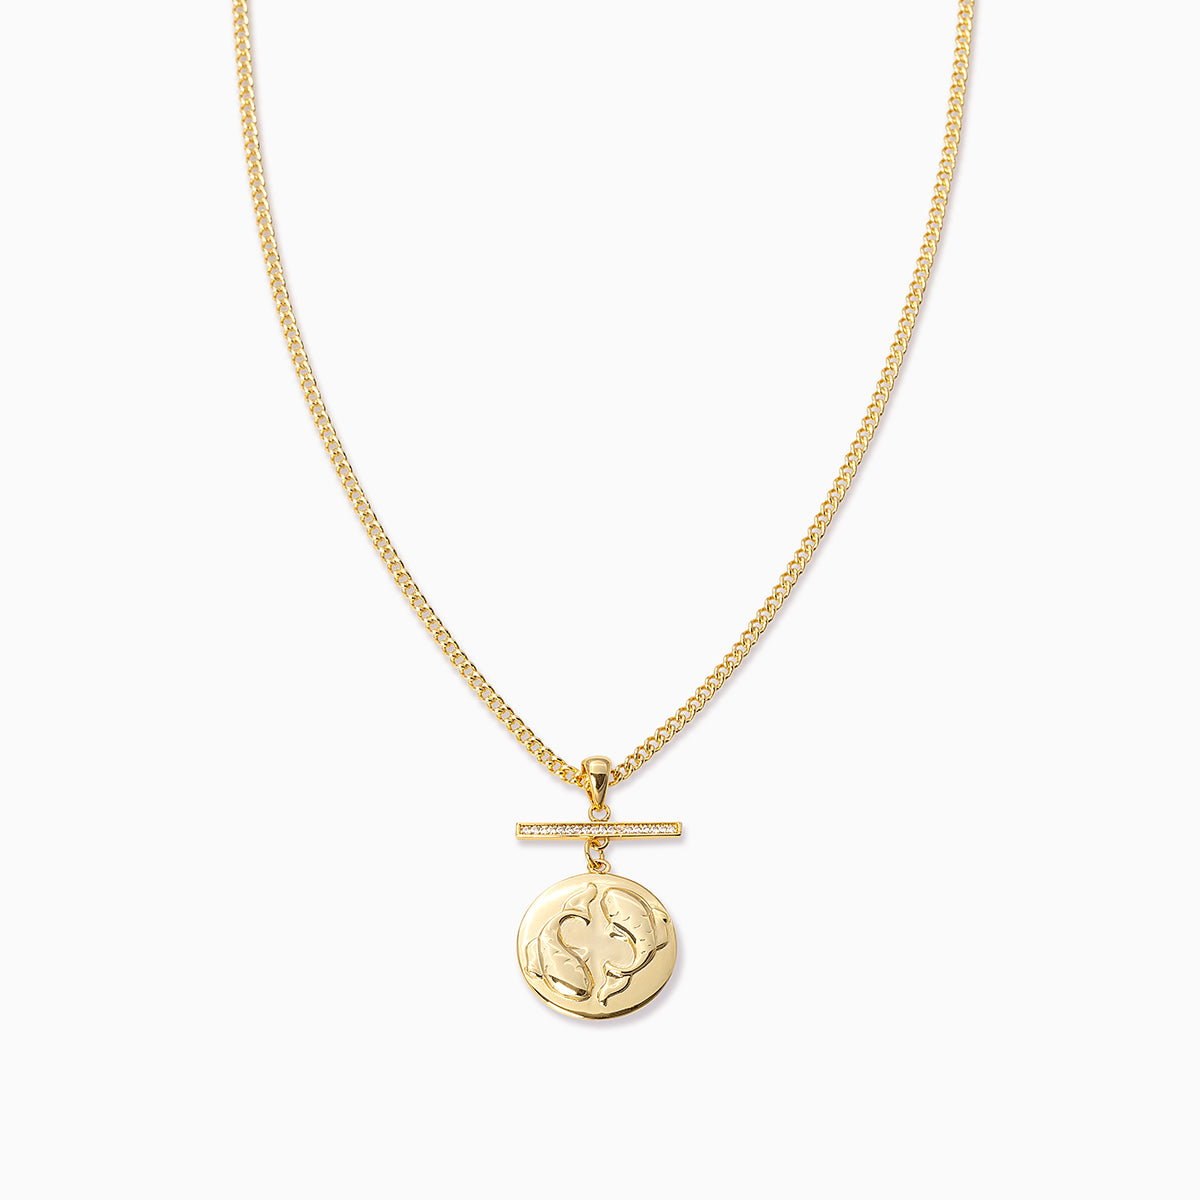 Zodiac Pendant Necklace | Pisces | Product Image | Uncommon James